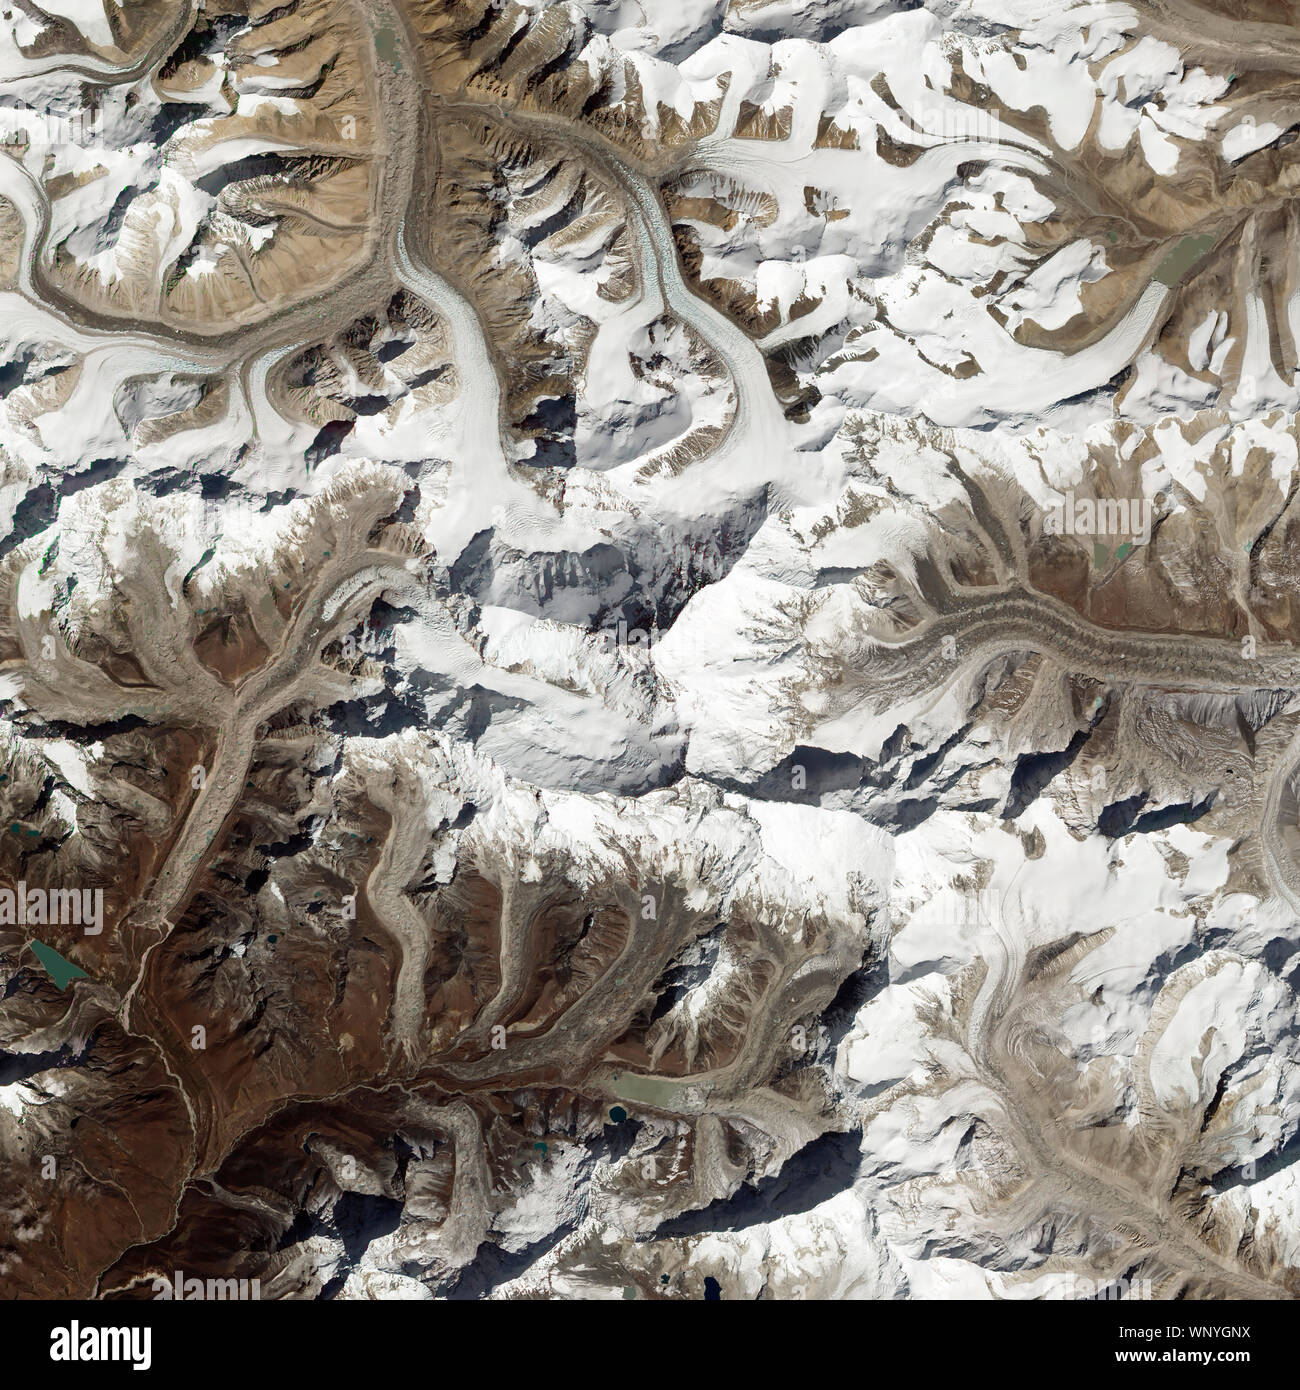 Montagnes de l'Himalaya, avec le Mont Everest, le 7 août 2017, le Népal et la Chine, par la NASA/Jesse Allen et Robert Simmon/DPA Banque D'Images